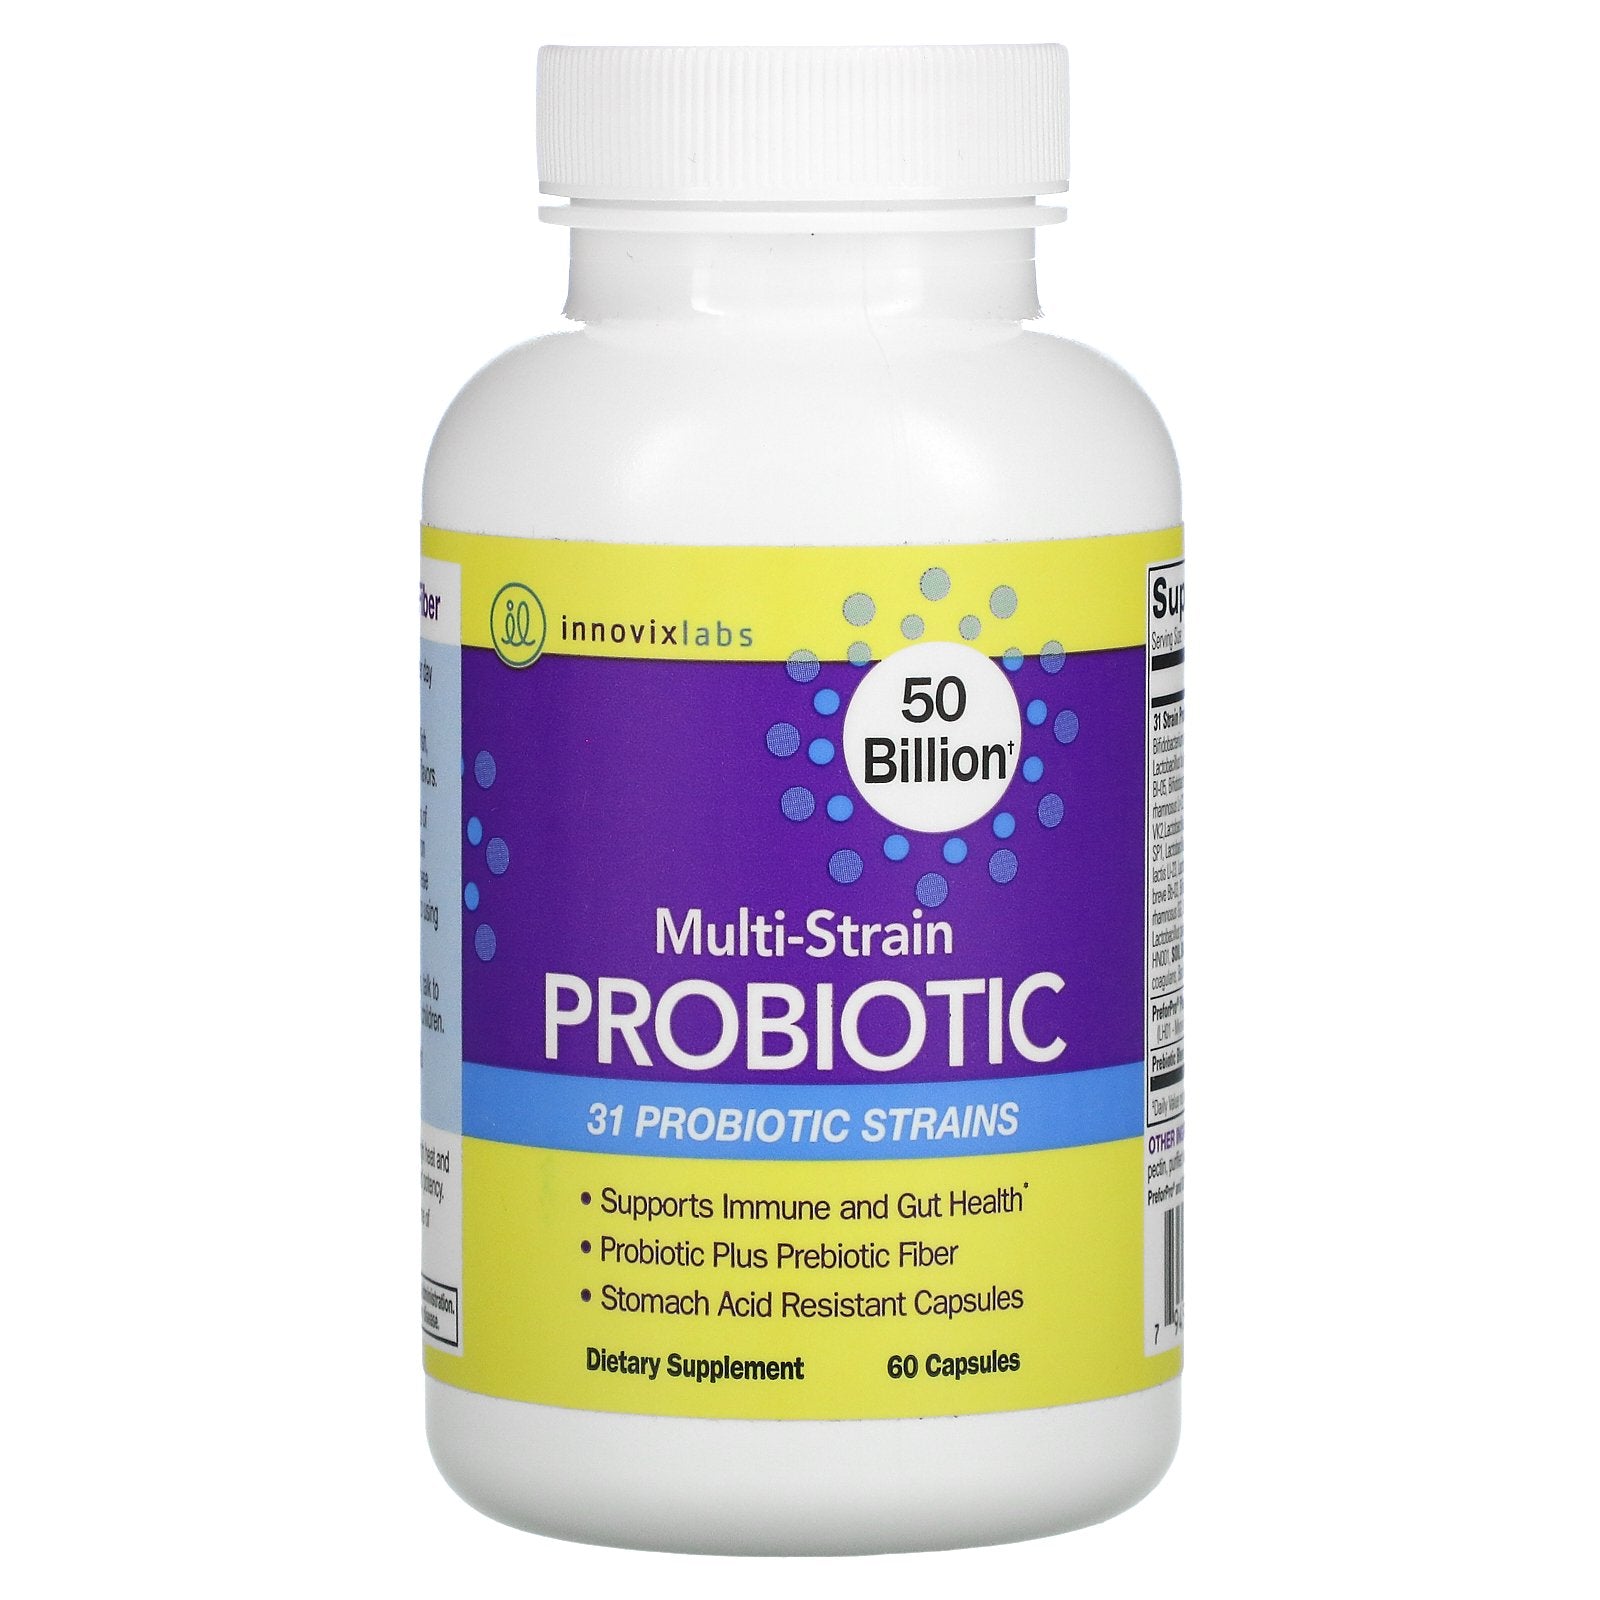 Innovixlabs - Multi-strain Probiotic | Suplemento Alimenticio